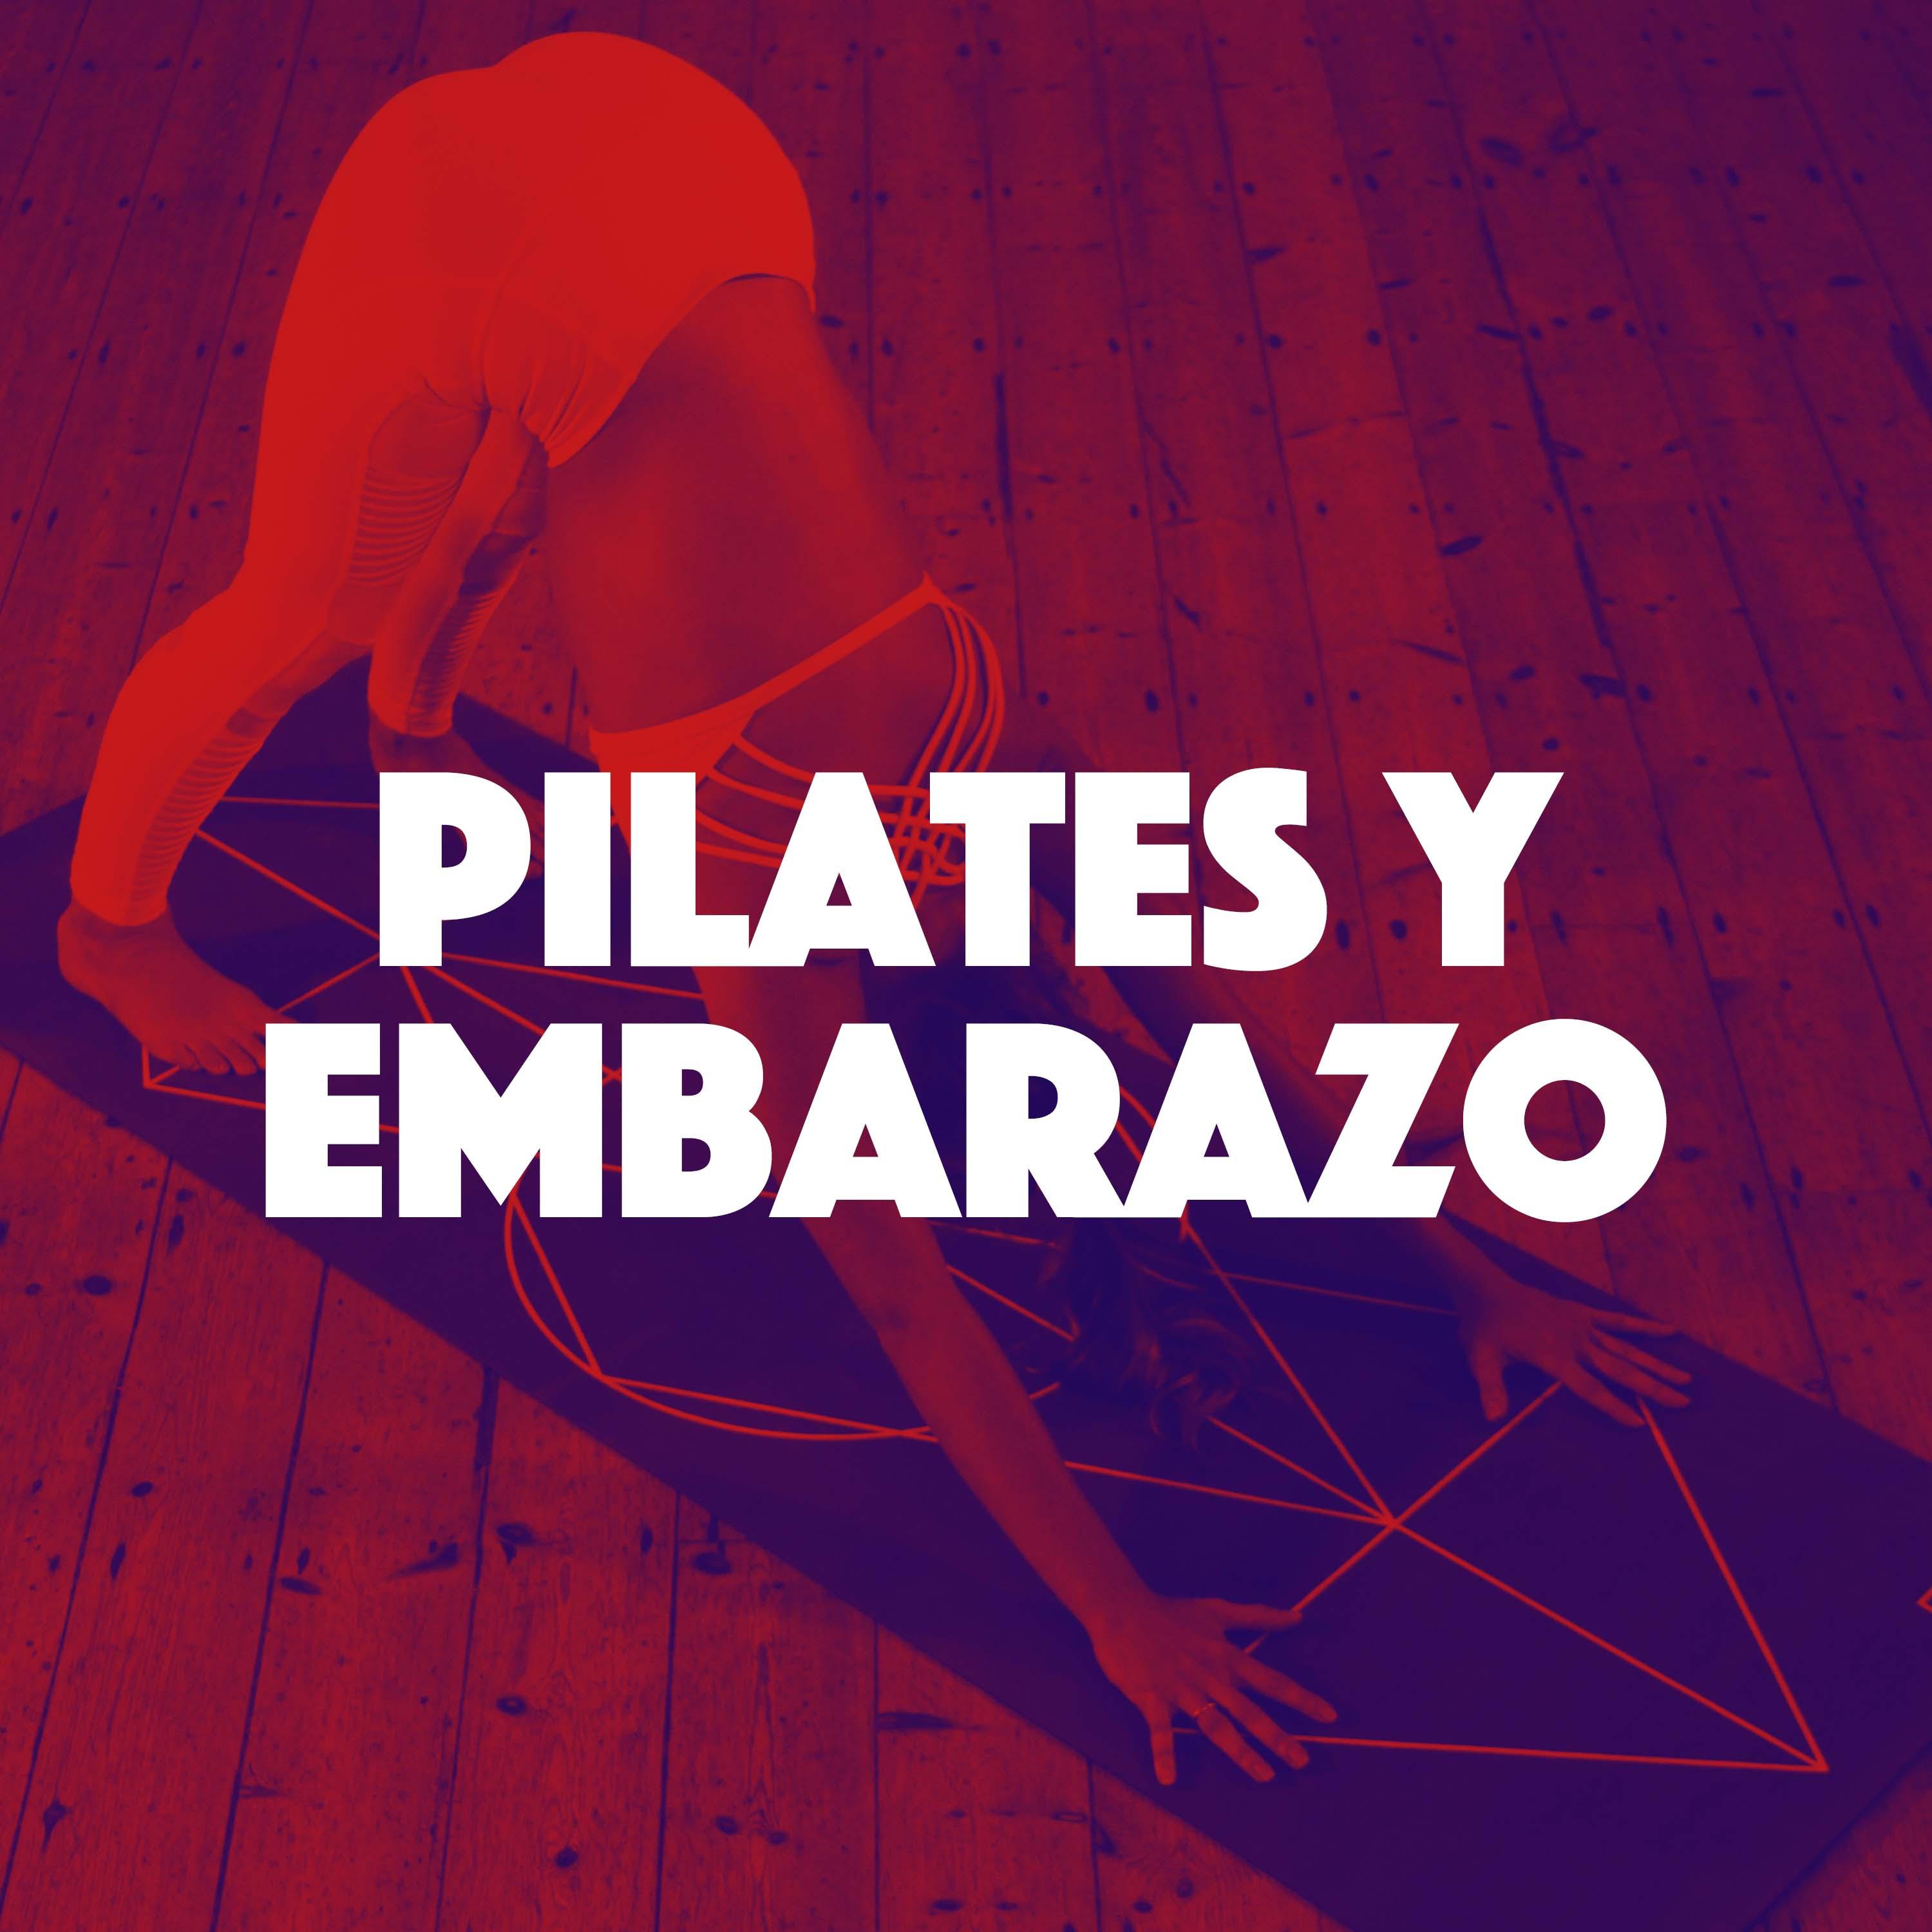 Pilates y Embarazo  Cd de Mu sica Lounge 2018 para Entrenamiento y Relajamiento de las Mujeres Embarazadas